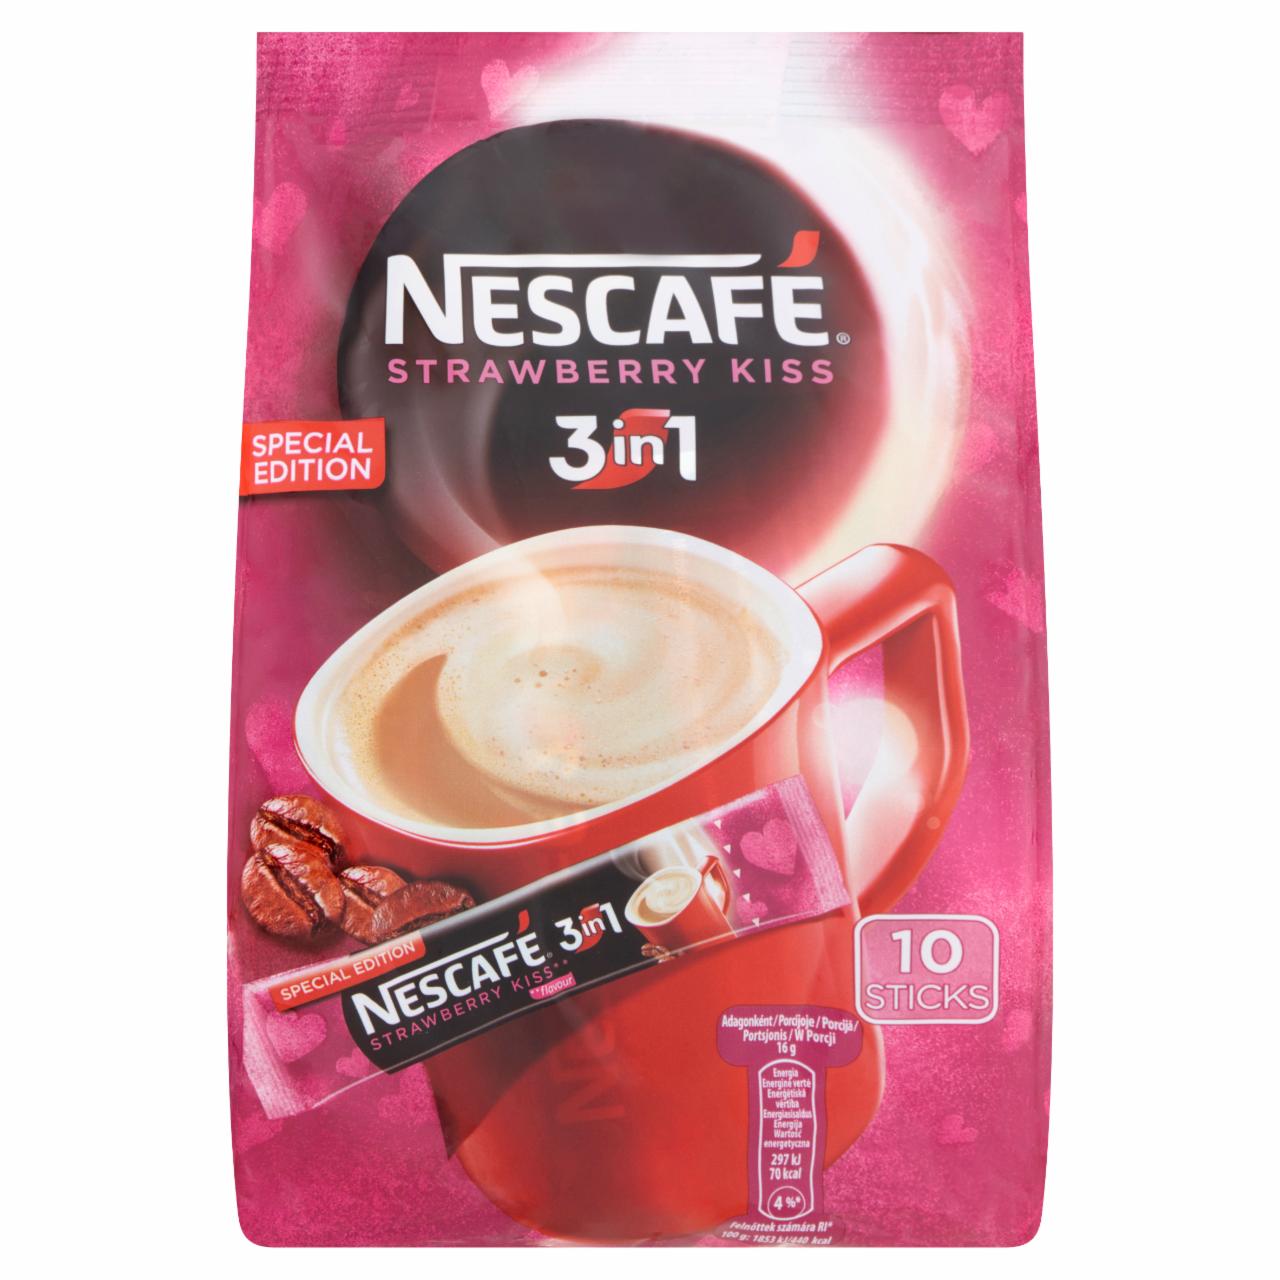 Képek - Nescafé 3in1 Strawberry Kiss eper ízű azonnal oldódó kávéspecialitás 10 db 160 g